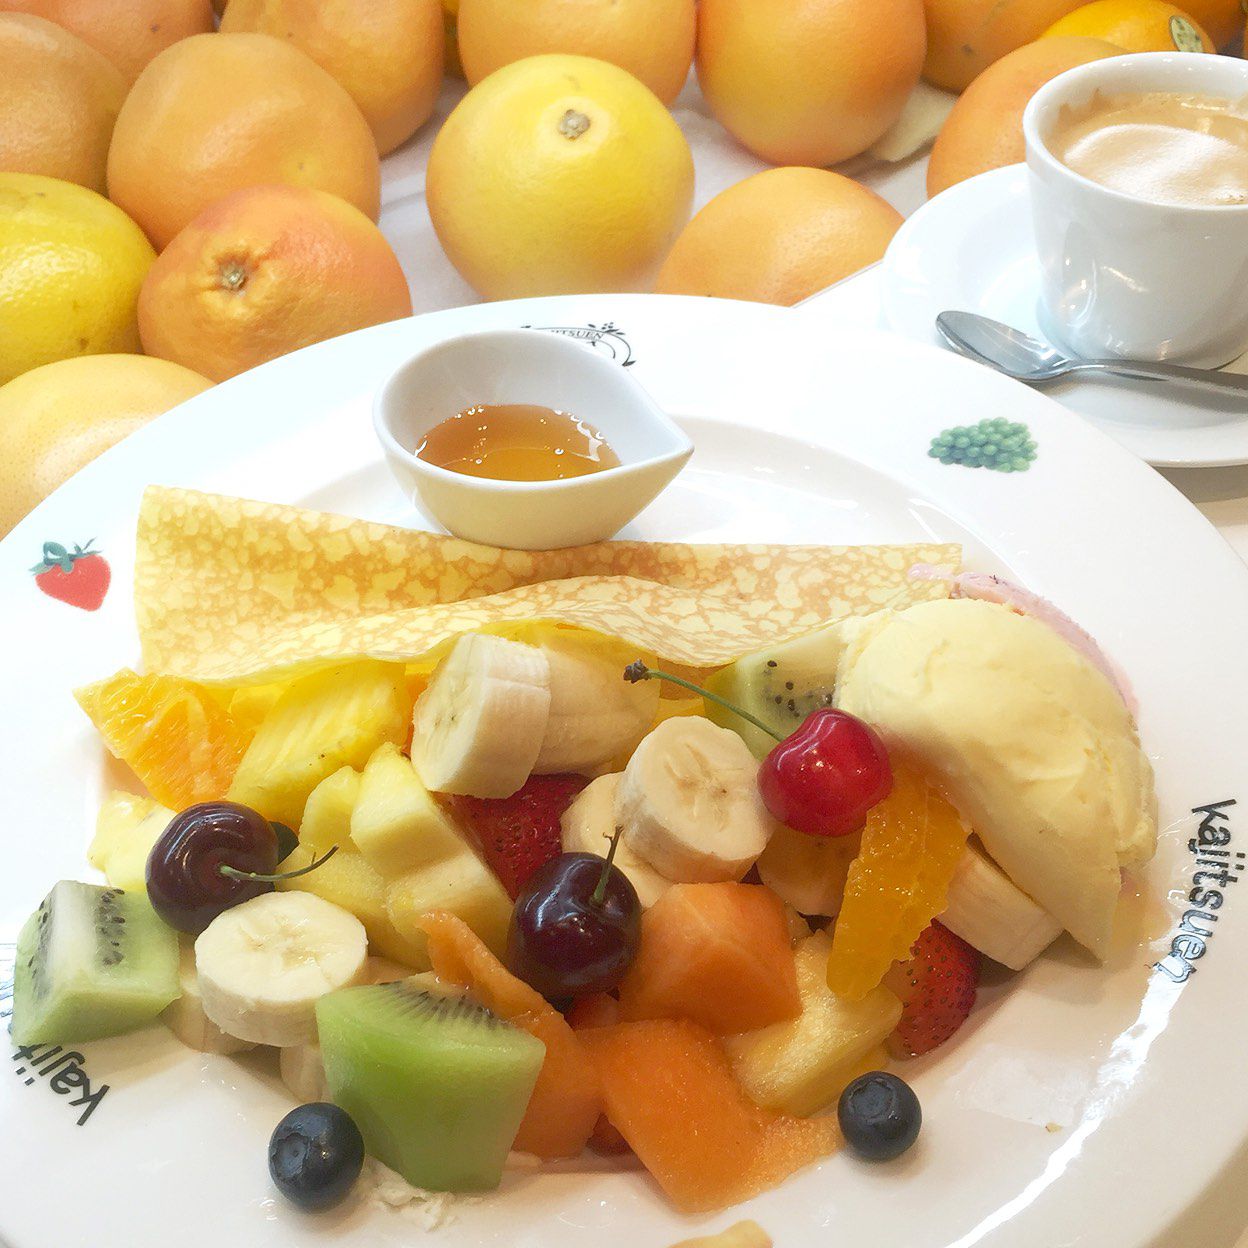 メイン画像 朝はフルーツが食べたい 東京都内のモーニングでフルーツを楽しめるお店7選 Retrip リトリップ